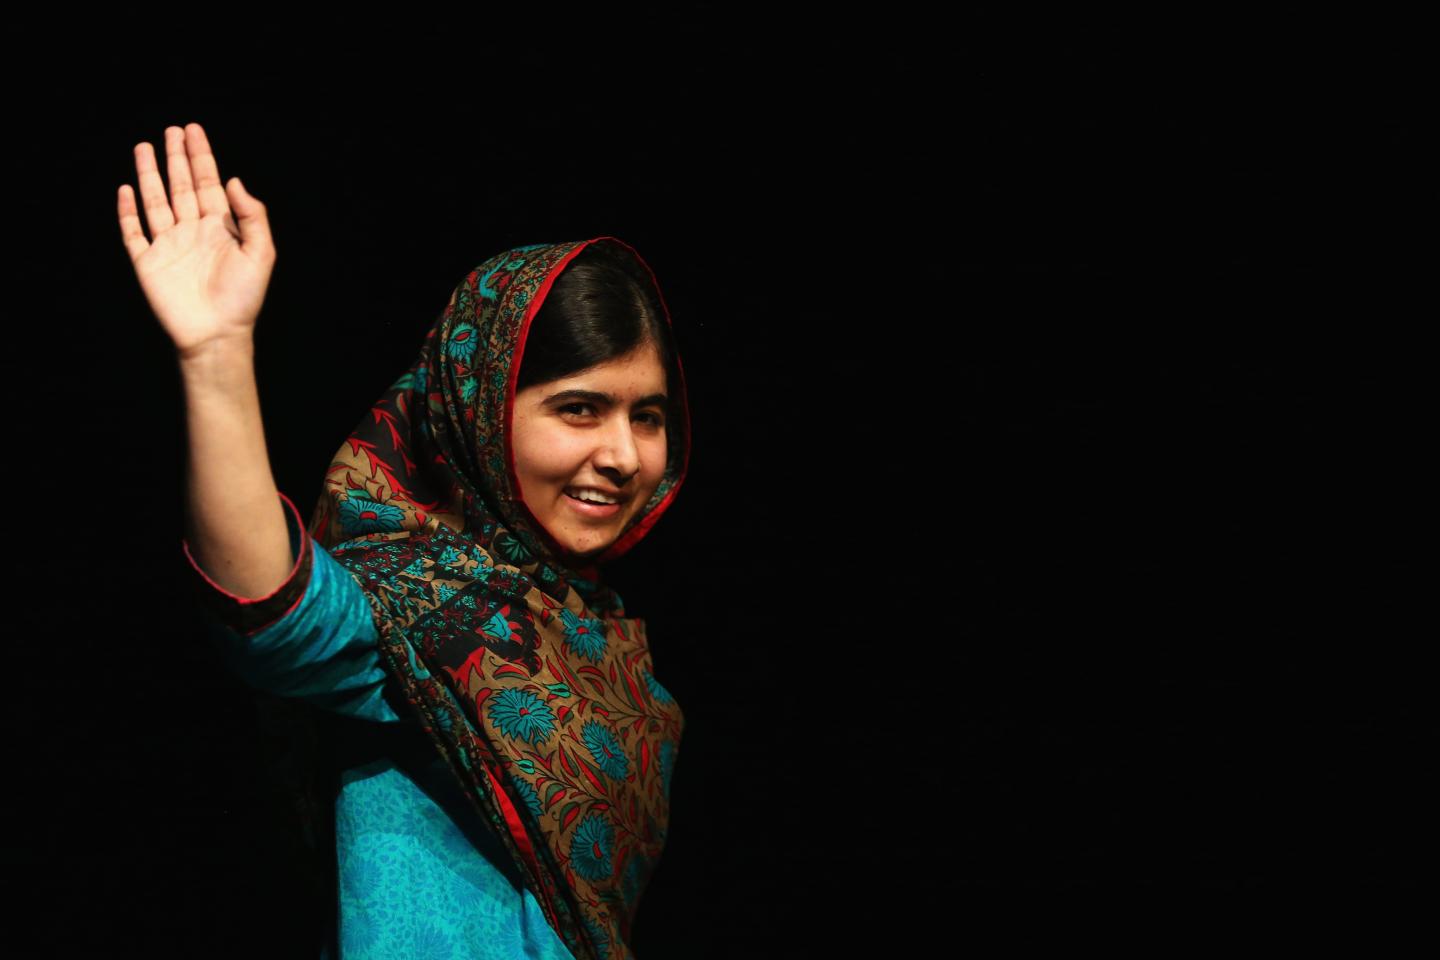 Лауреатка Нобелівської премії миру Малала Юсуфзай вперше після нападу талібів прибула в Пакистан